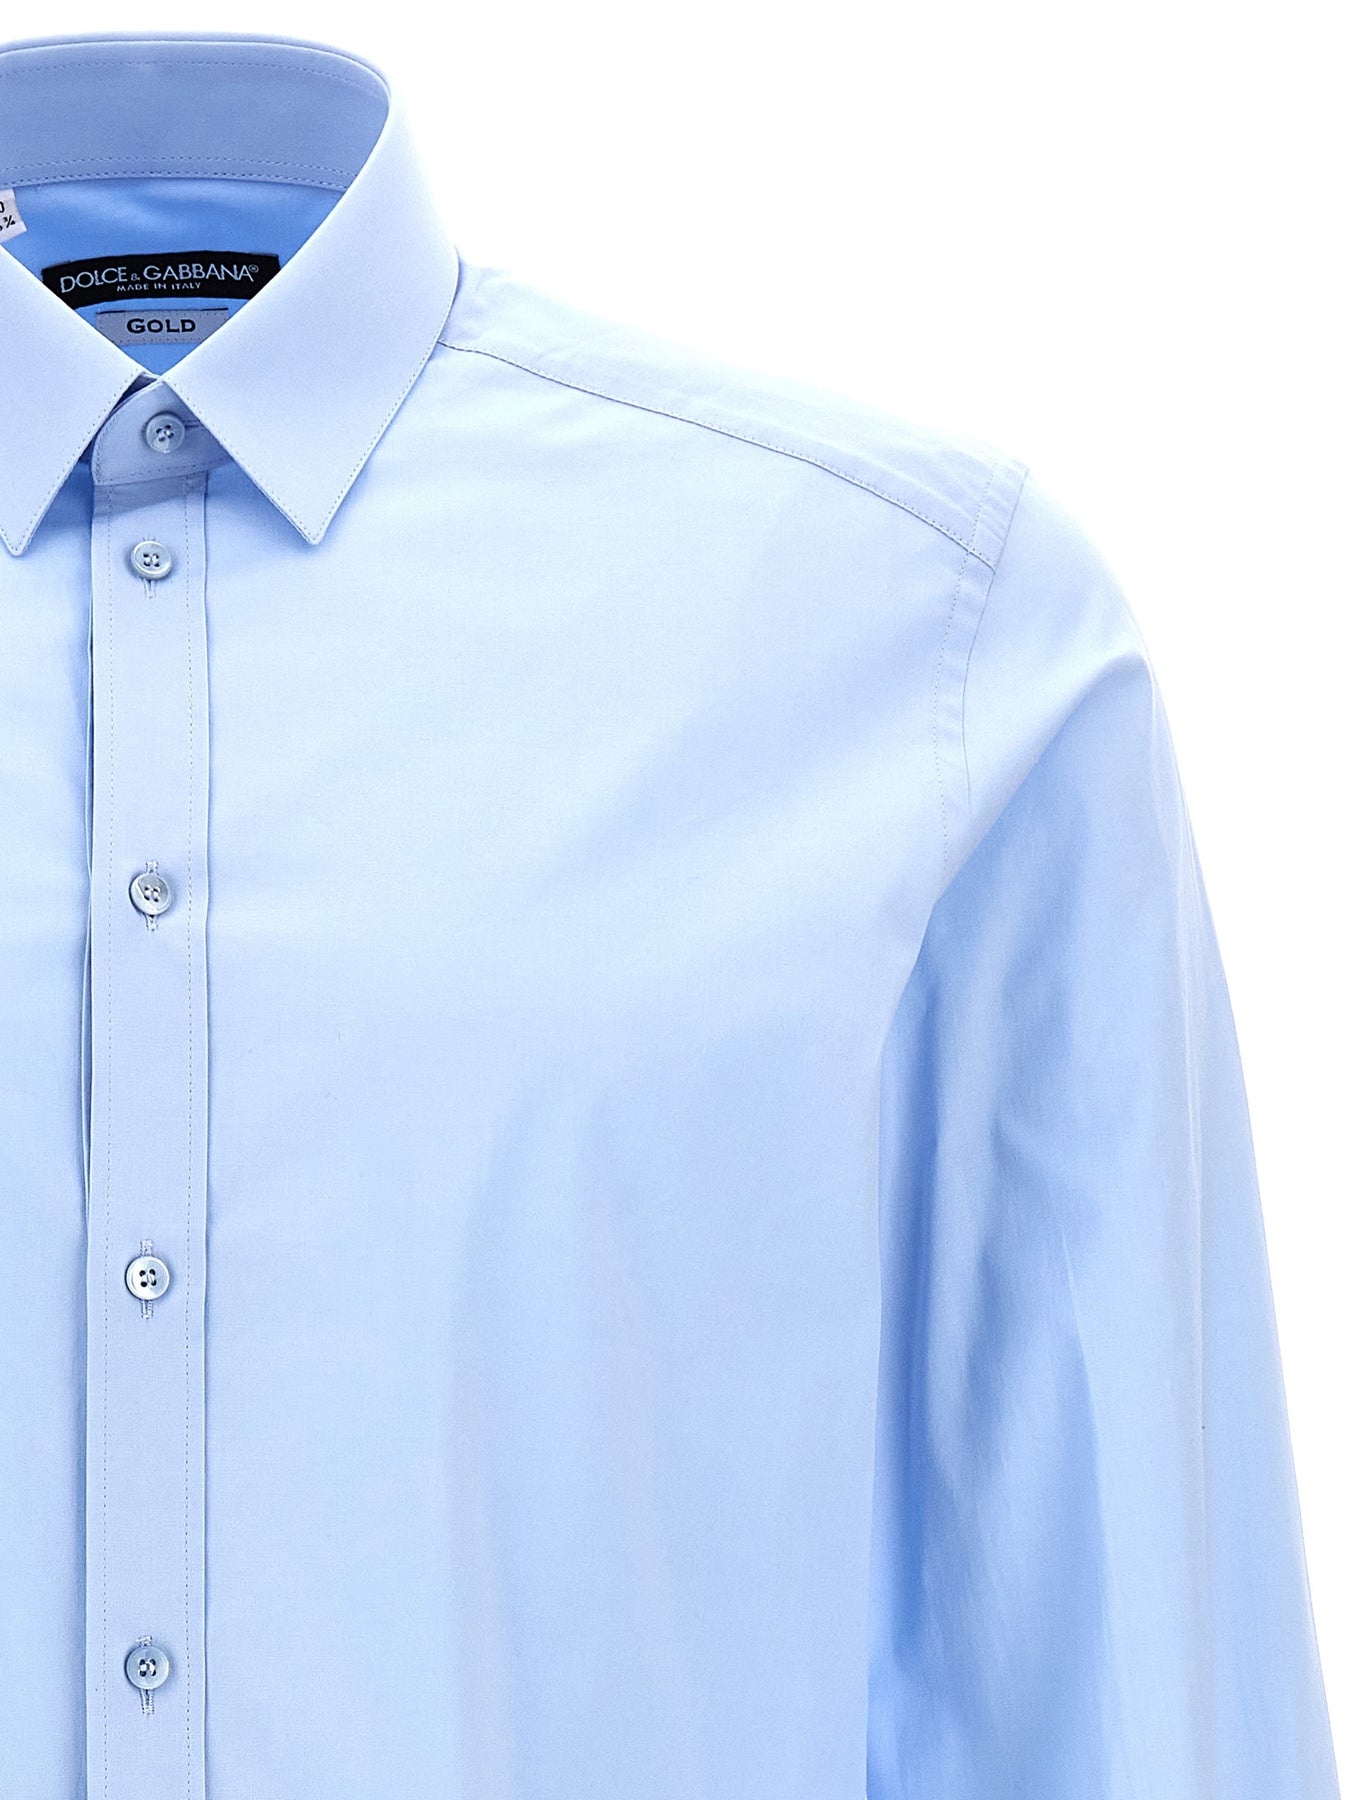 Dg Essential Shirt Shirt, Blouse Light Blue - 3